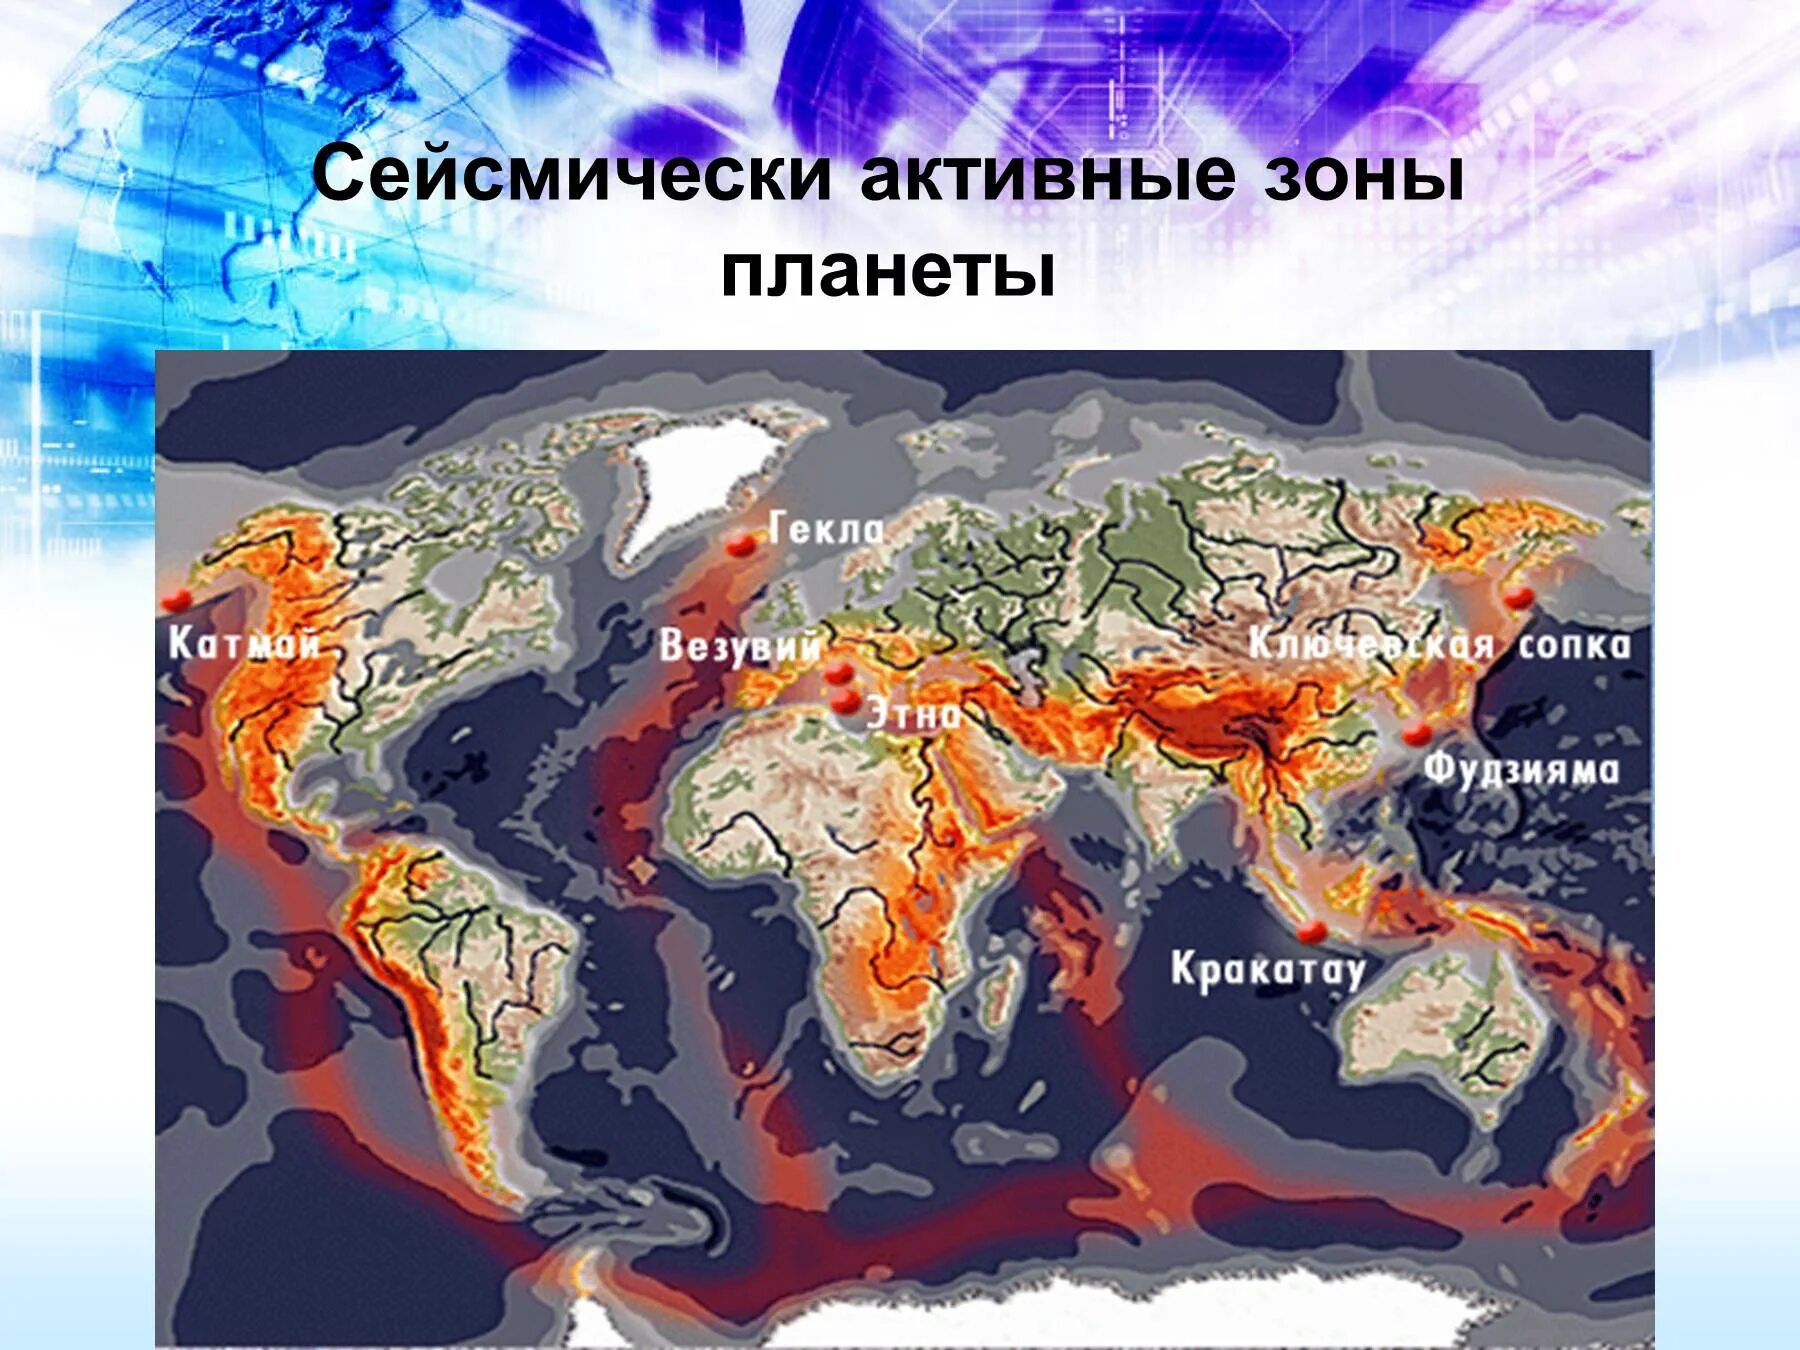 Районы возможных землетрясений. Тихоокеанский сейсмический пояс. Зоны сейсмической активности Евразии. Действующие вулканы Евразии на карте.